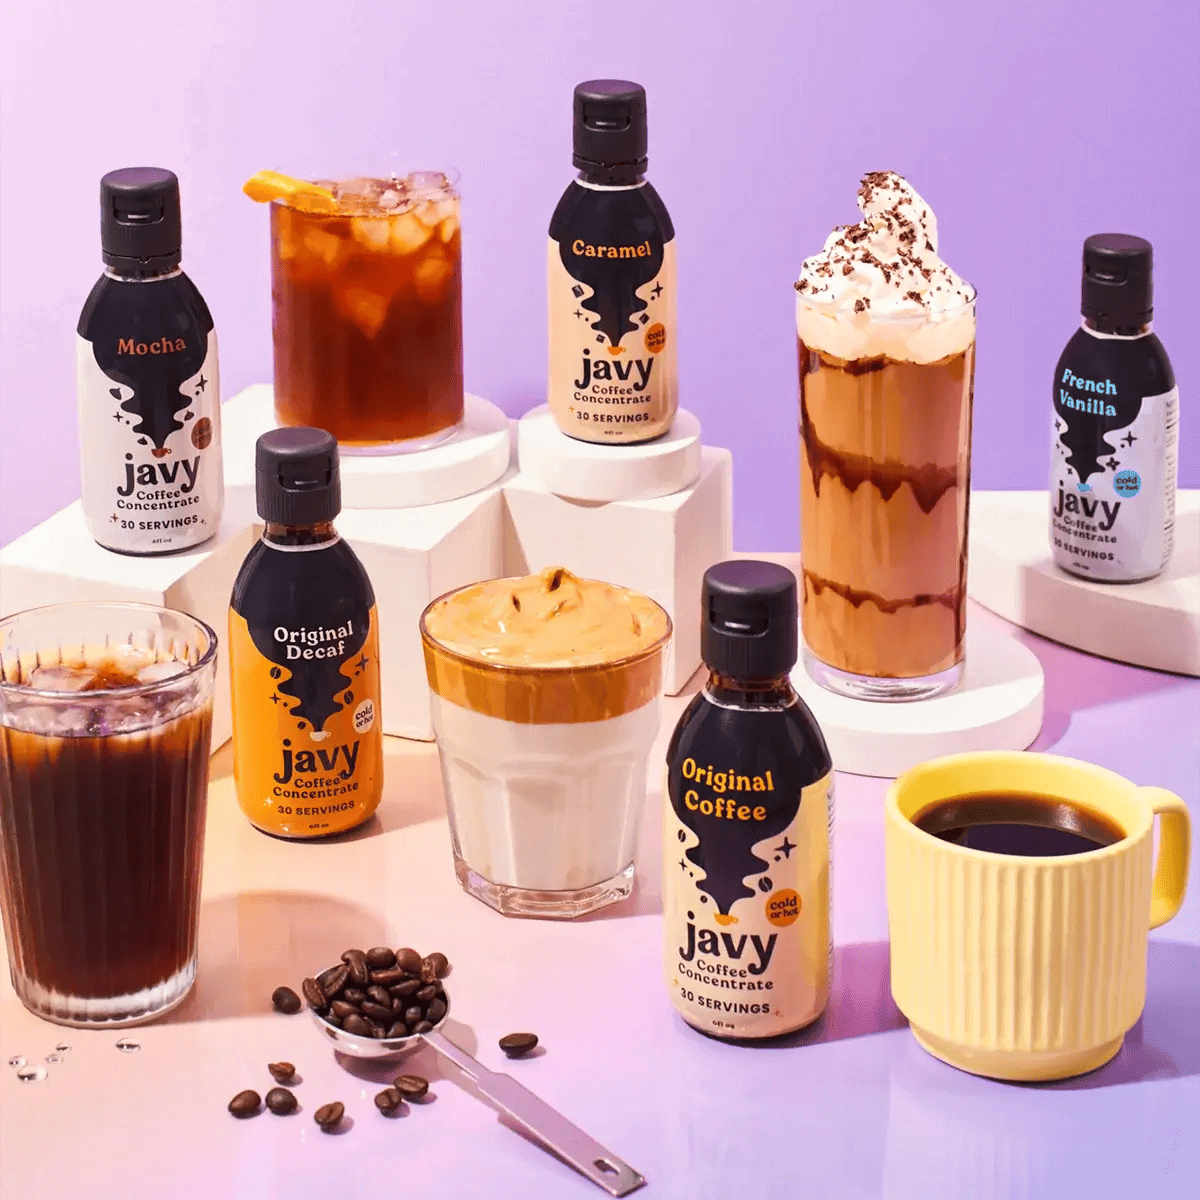 A variety of seasonal flavors of Javy Coffee